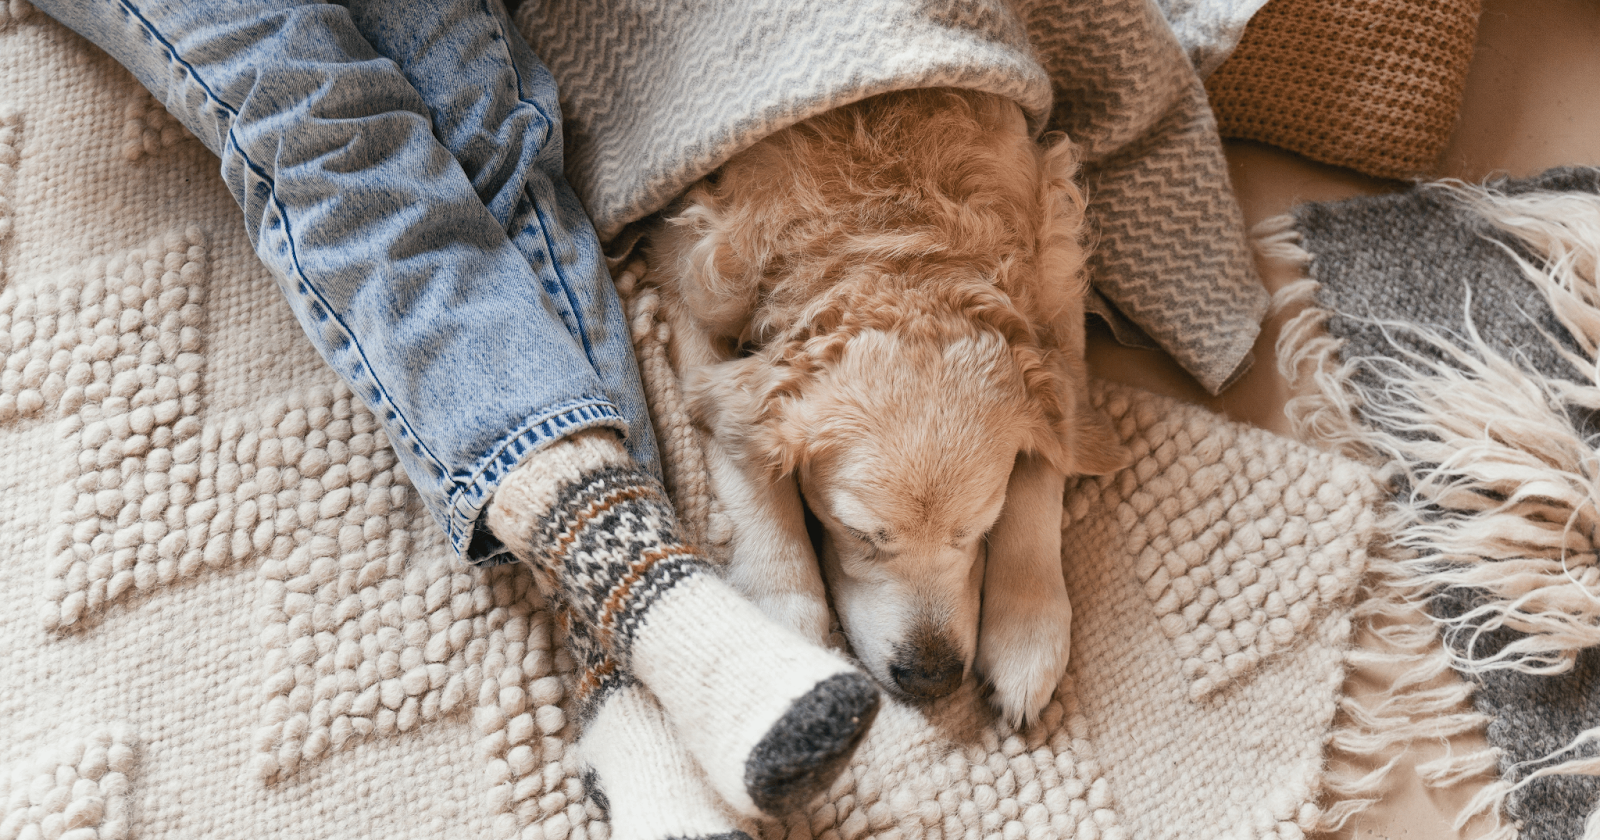 senior dog snuggled in blanket